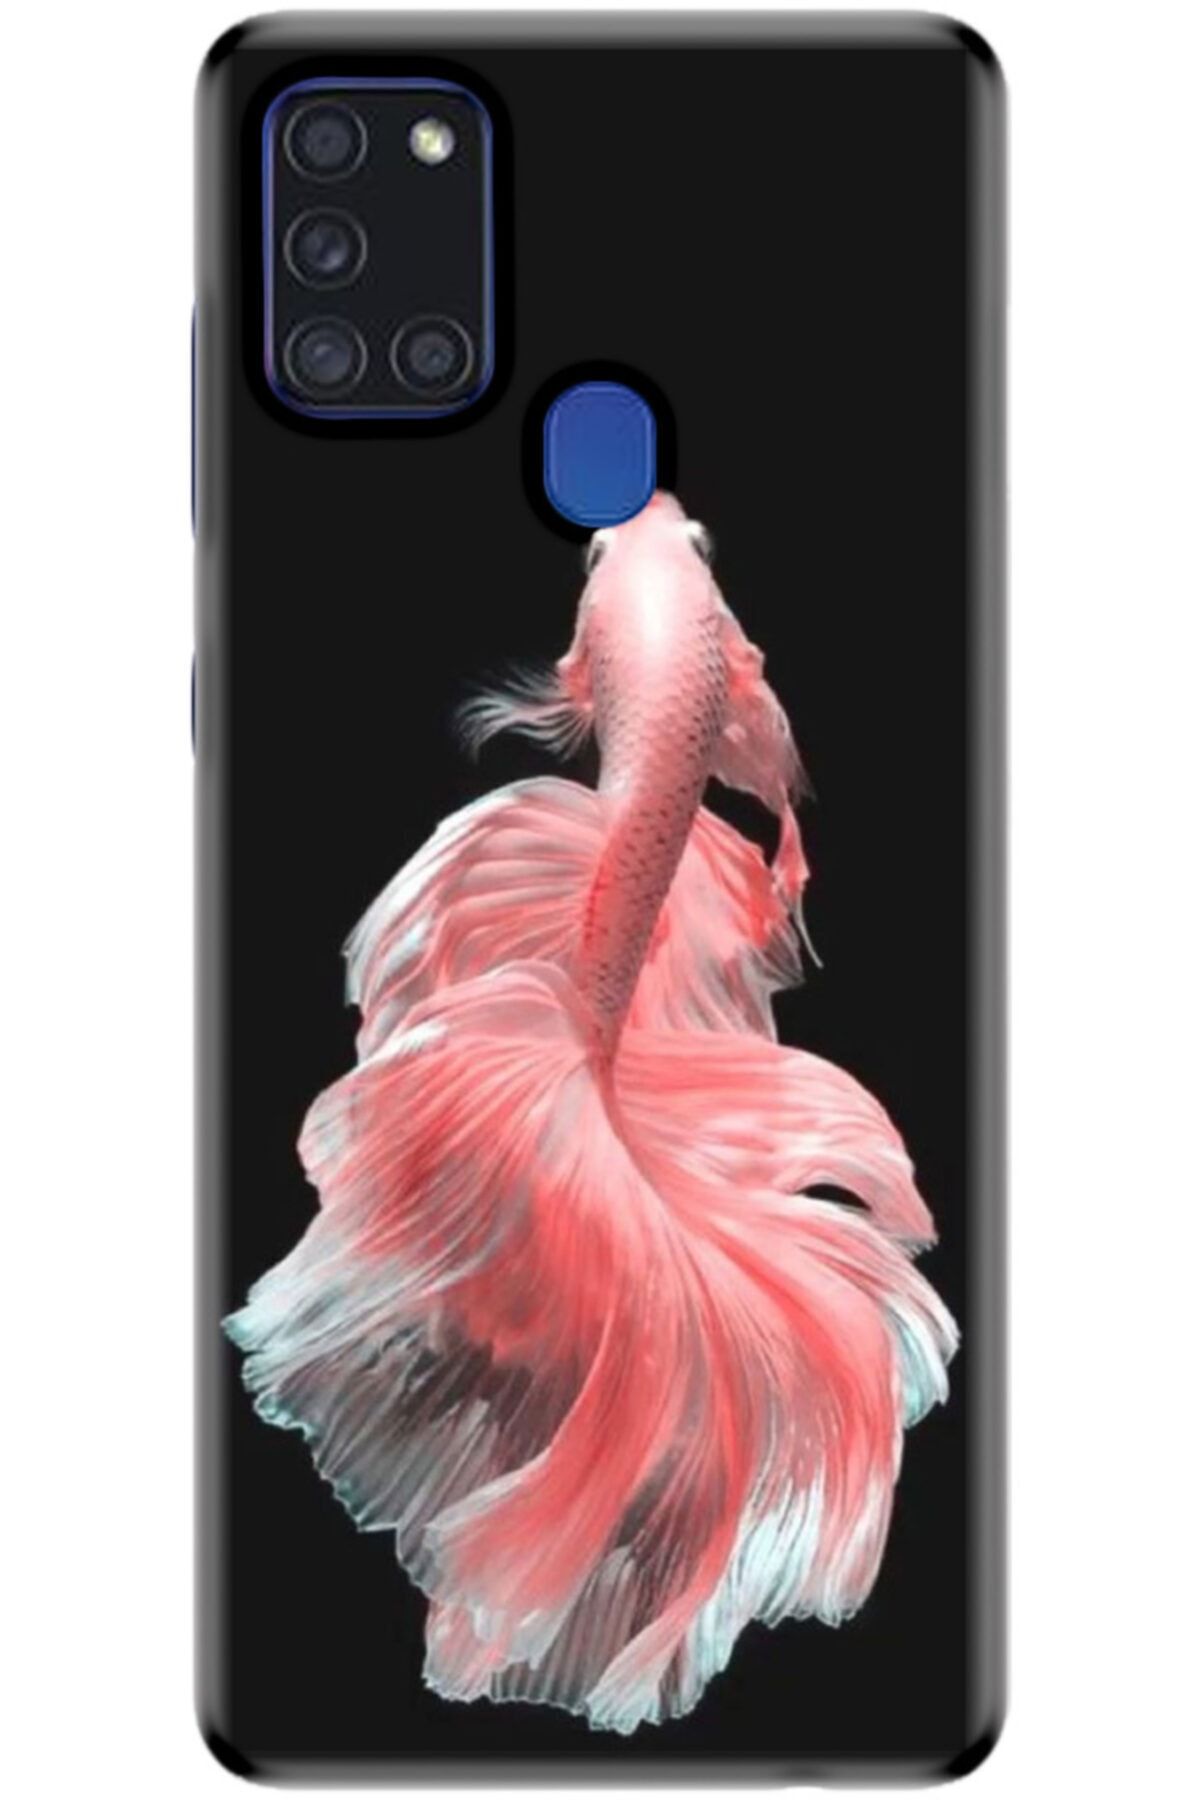 Turkiyecepaksesuar Samsung Galaxy A21s Kılıf Silikon Baskılı Desenli Arka Kapak